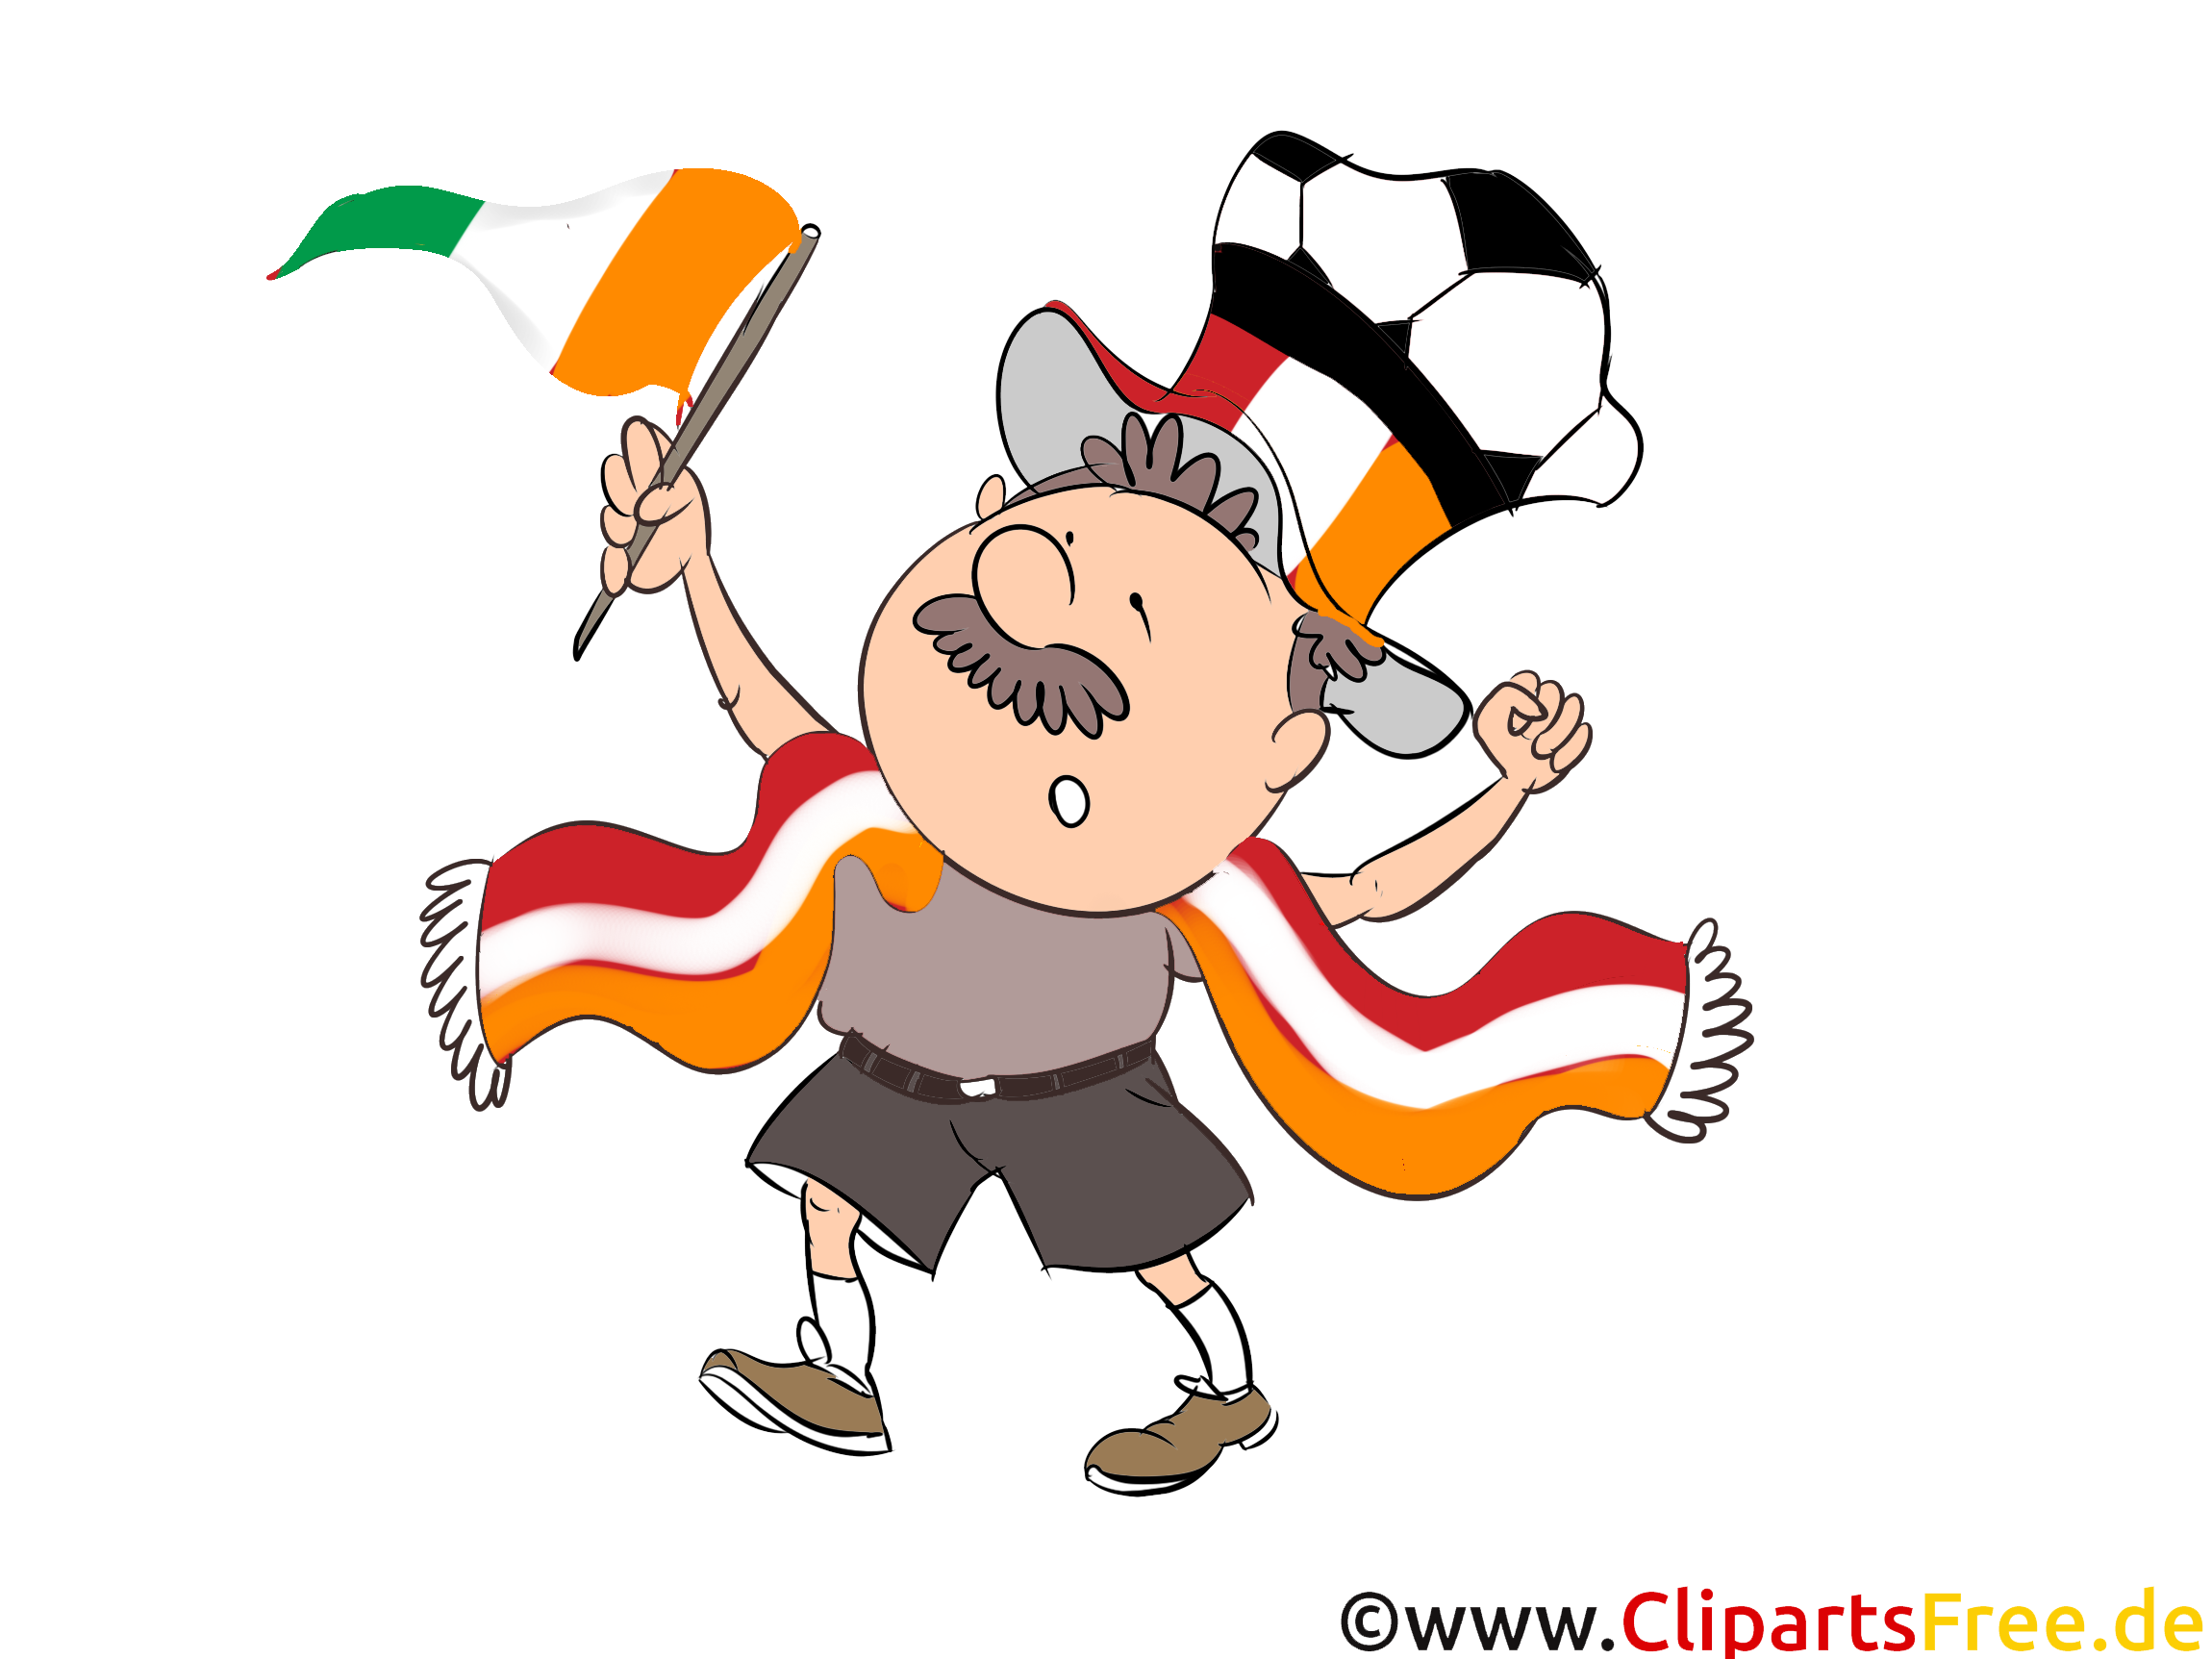 Télécharger Soccer Irlande Images gratuitement